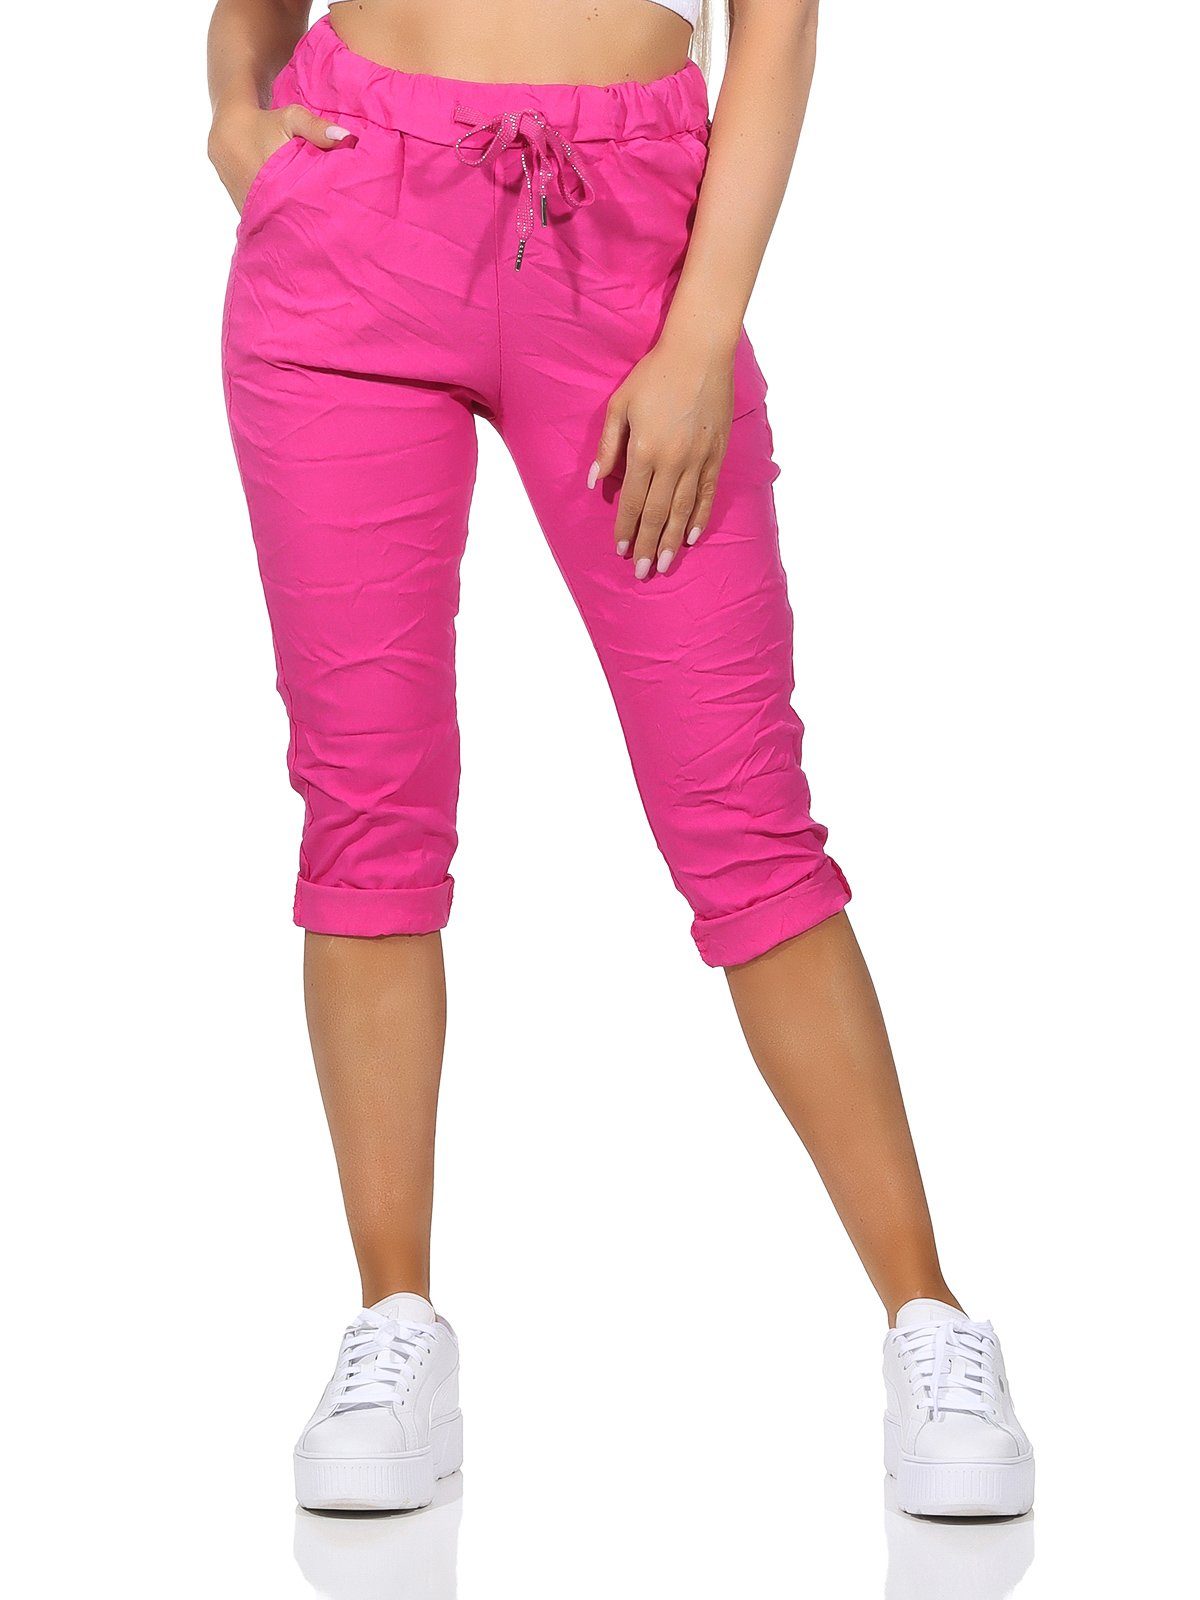 Aurela Damenmode 7/8-Hose sommerlichen Jeans 36-44 und Farben, Kurze Bermuda Taschen Damen Capri in Kordelzug, Pink Hose Sommerhose